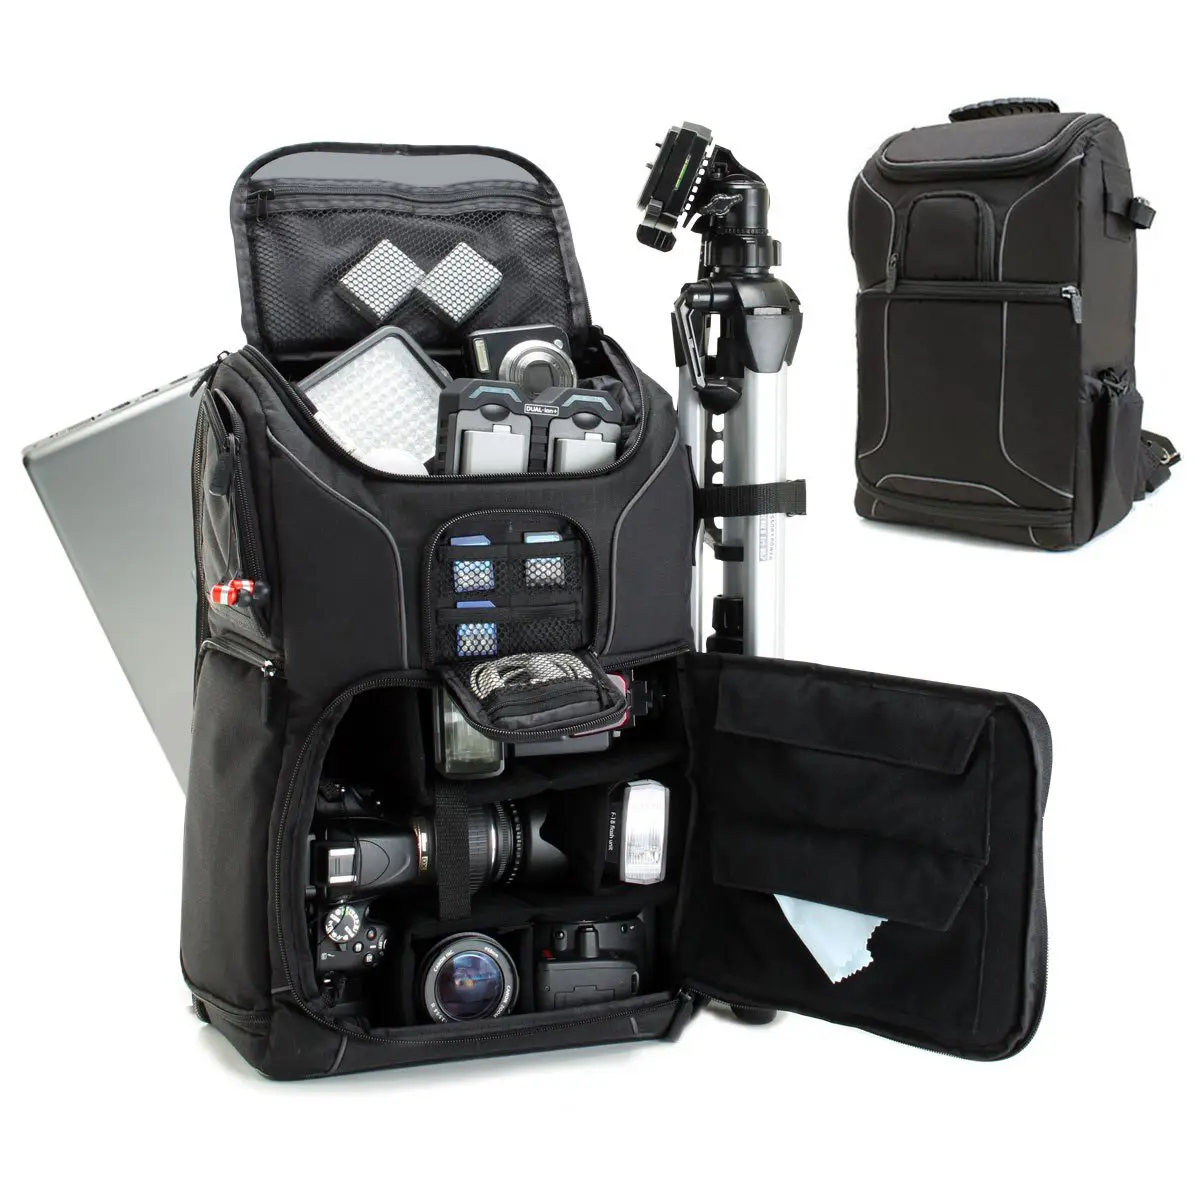 Bolsa de cámara Dslr profesional, bolsa de viaje digital al aire libre, mochila de cámara impermeable para fotografía, fabricación de fábrica personalizada